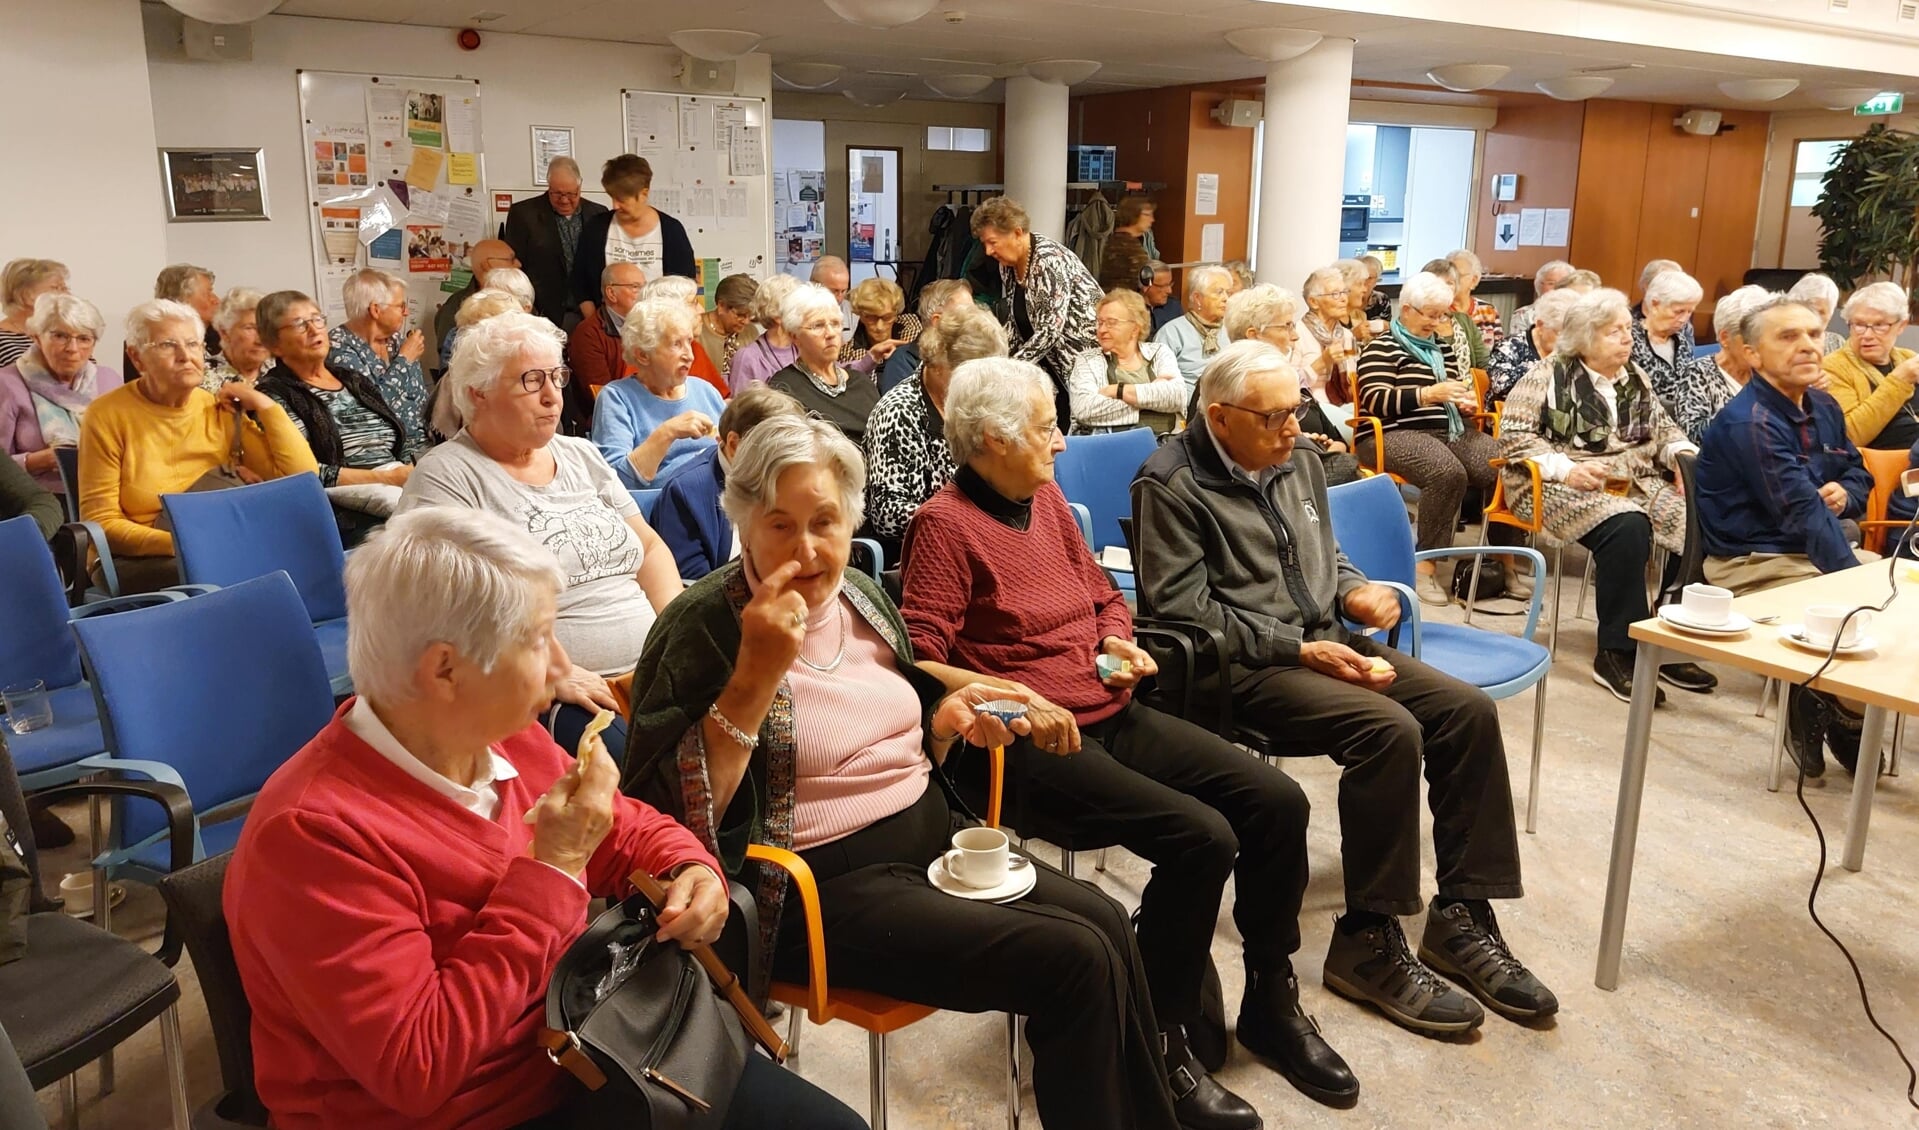 De leden van Senioren Belangen tijdens de pauze van de film “Pavarotti”